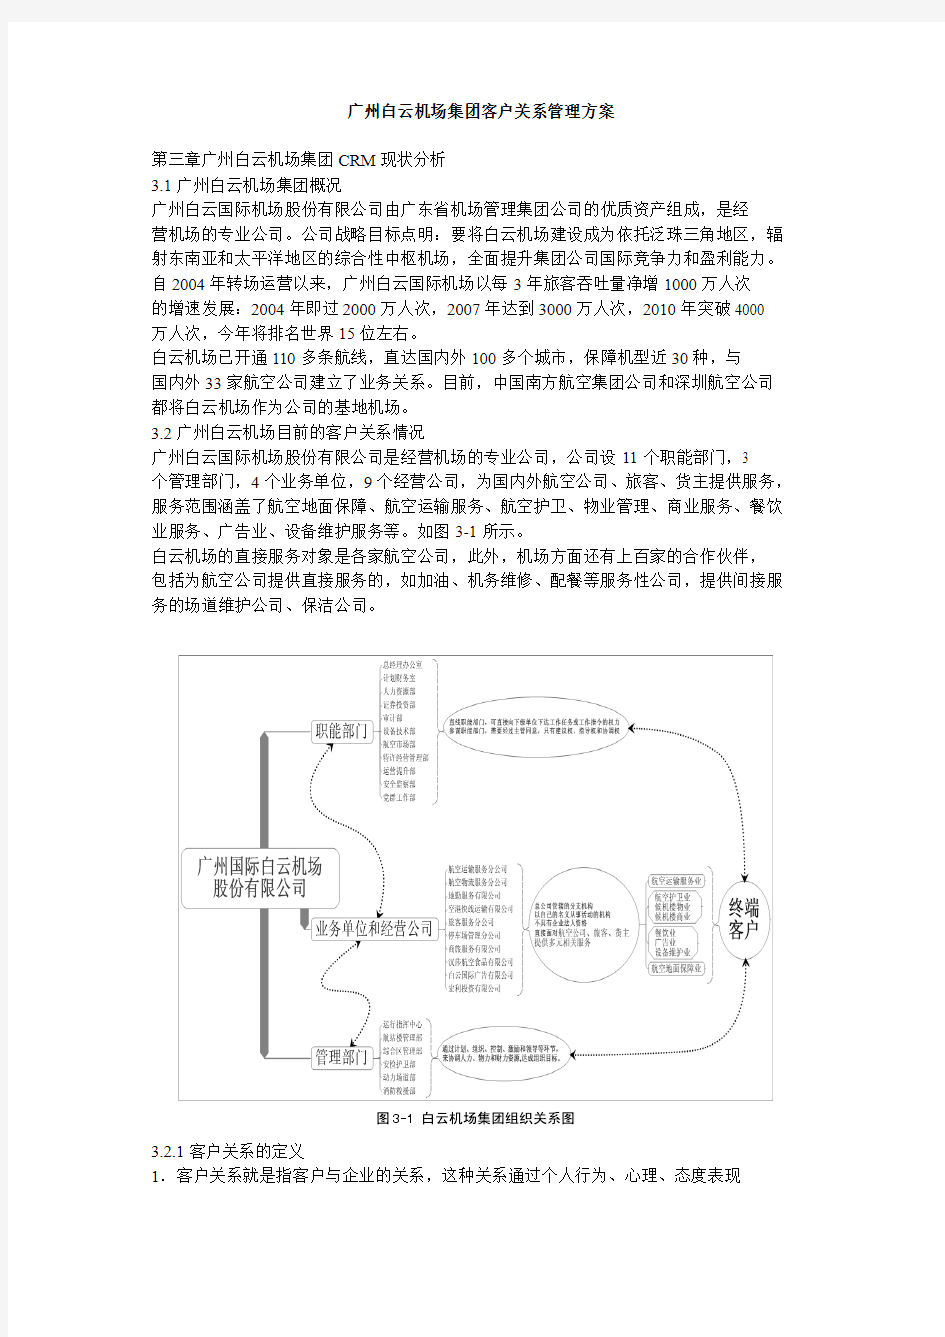 广州白云机场集团客户关系管理方案